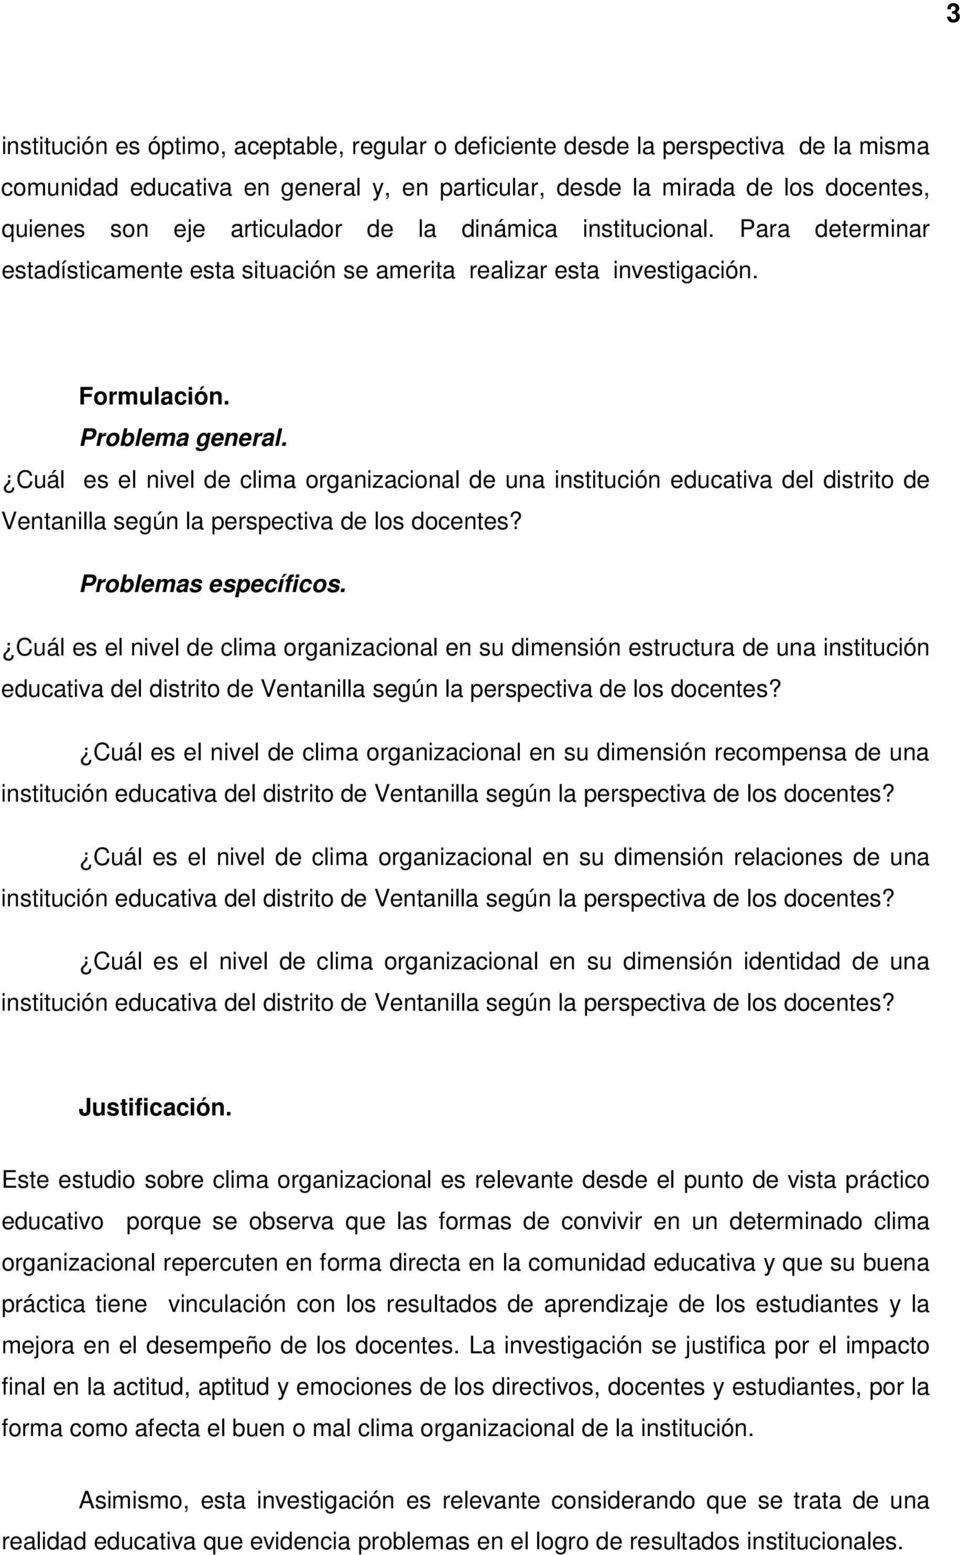 Cuál es el nivel de clima organizacional de una institución educativa del distrito de Ventanilla según la perspectiva de los docentes? Problemas específicos.